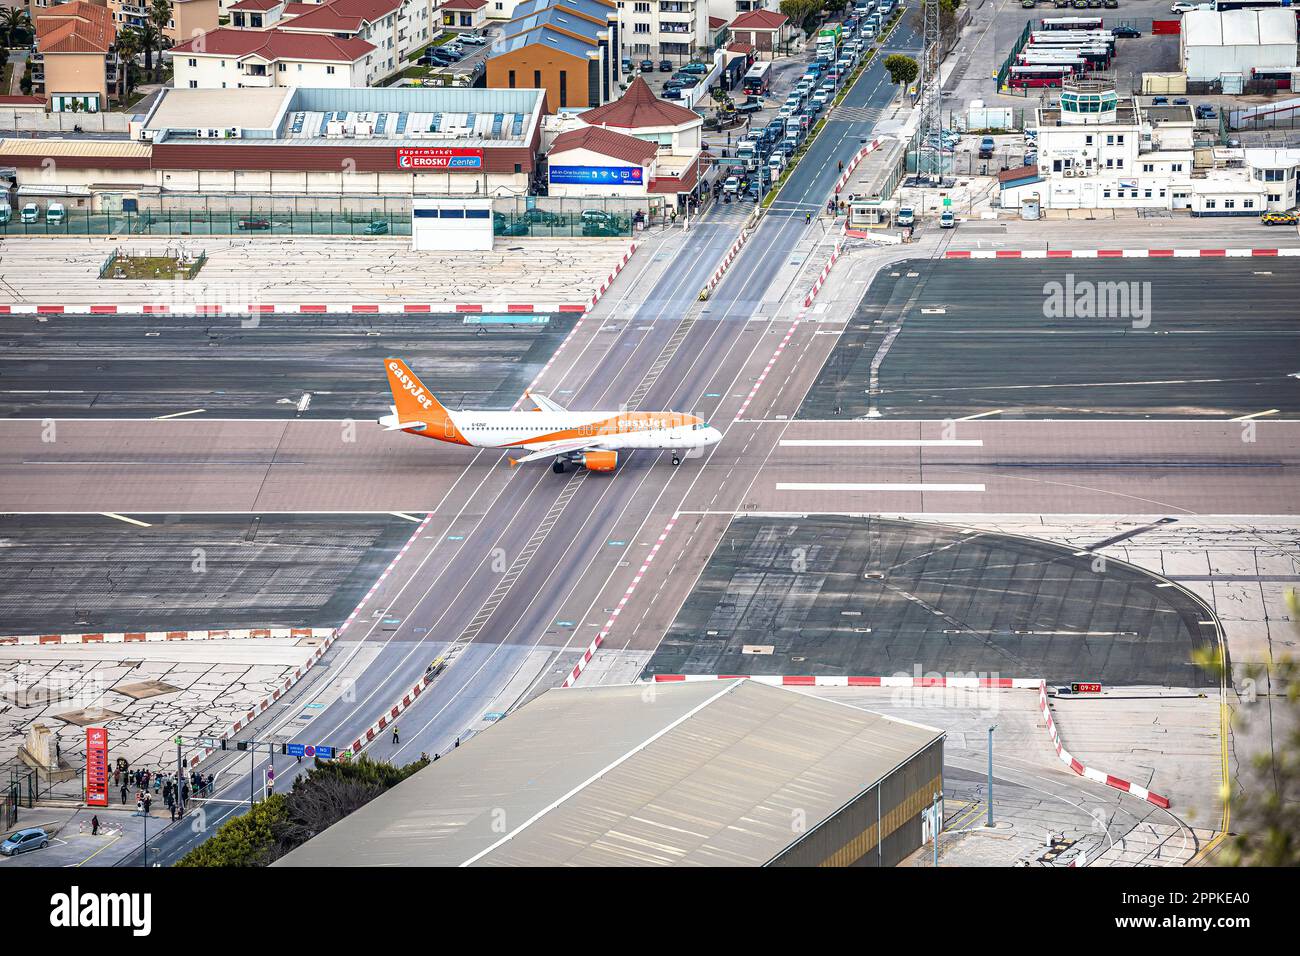 Gibraltar border entrance over airport runway Stock Photo